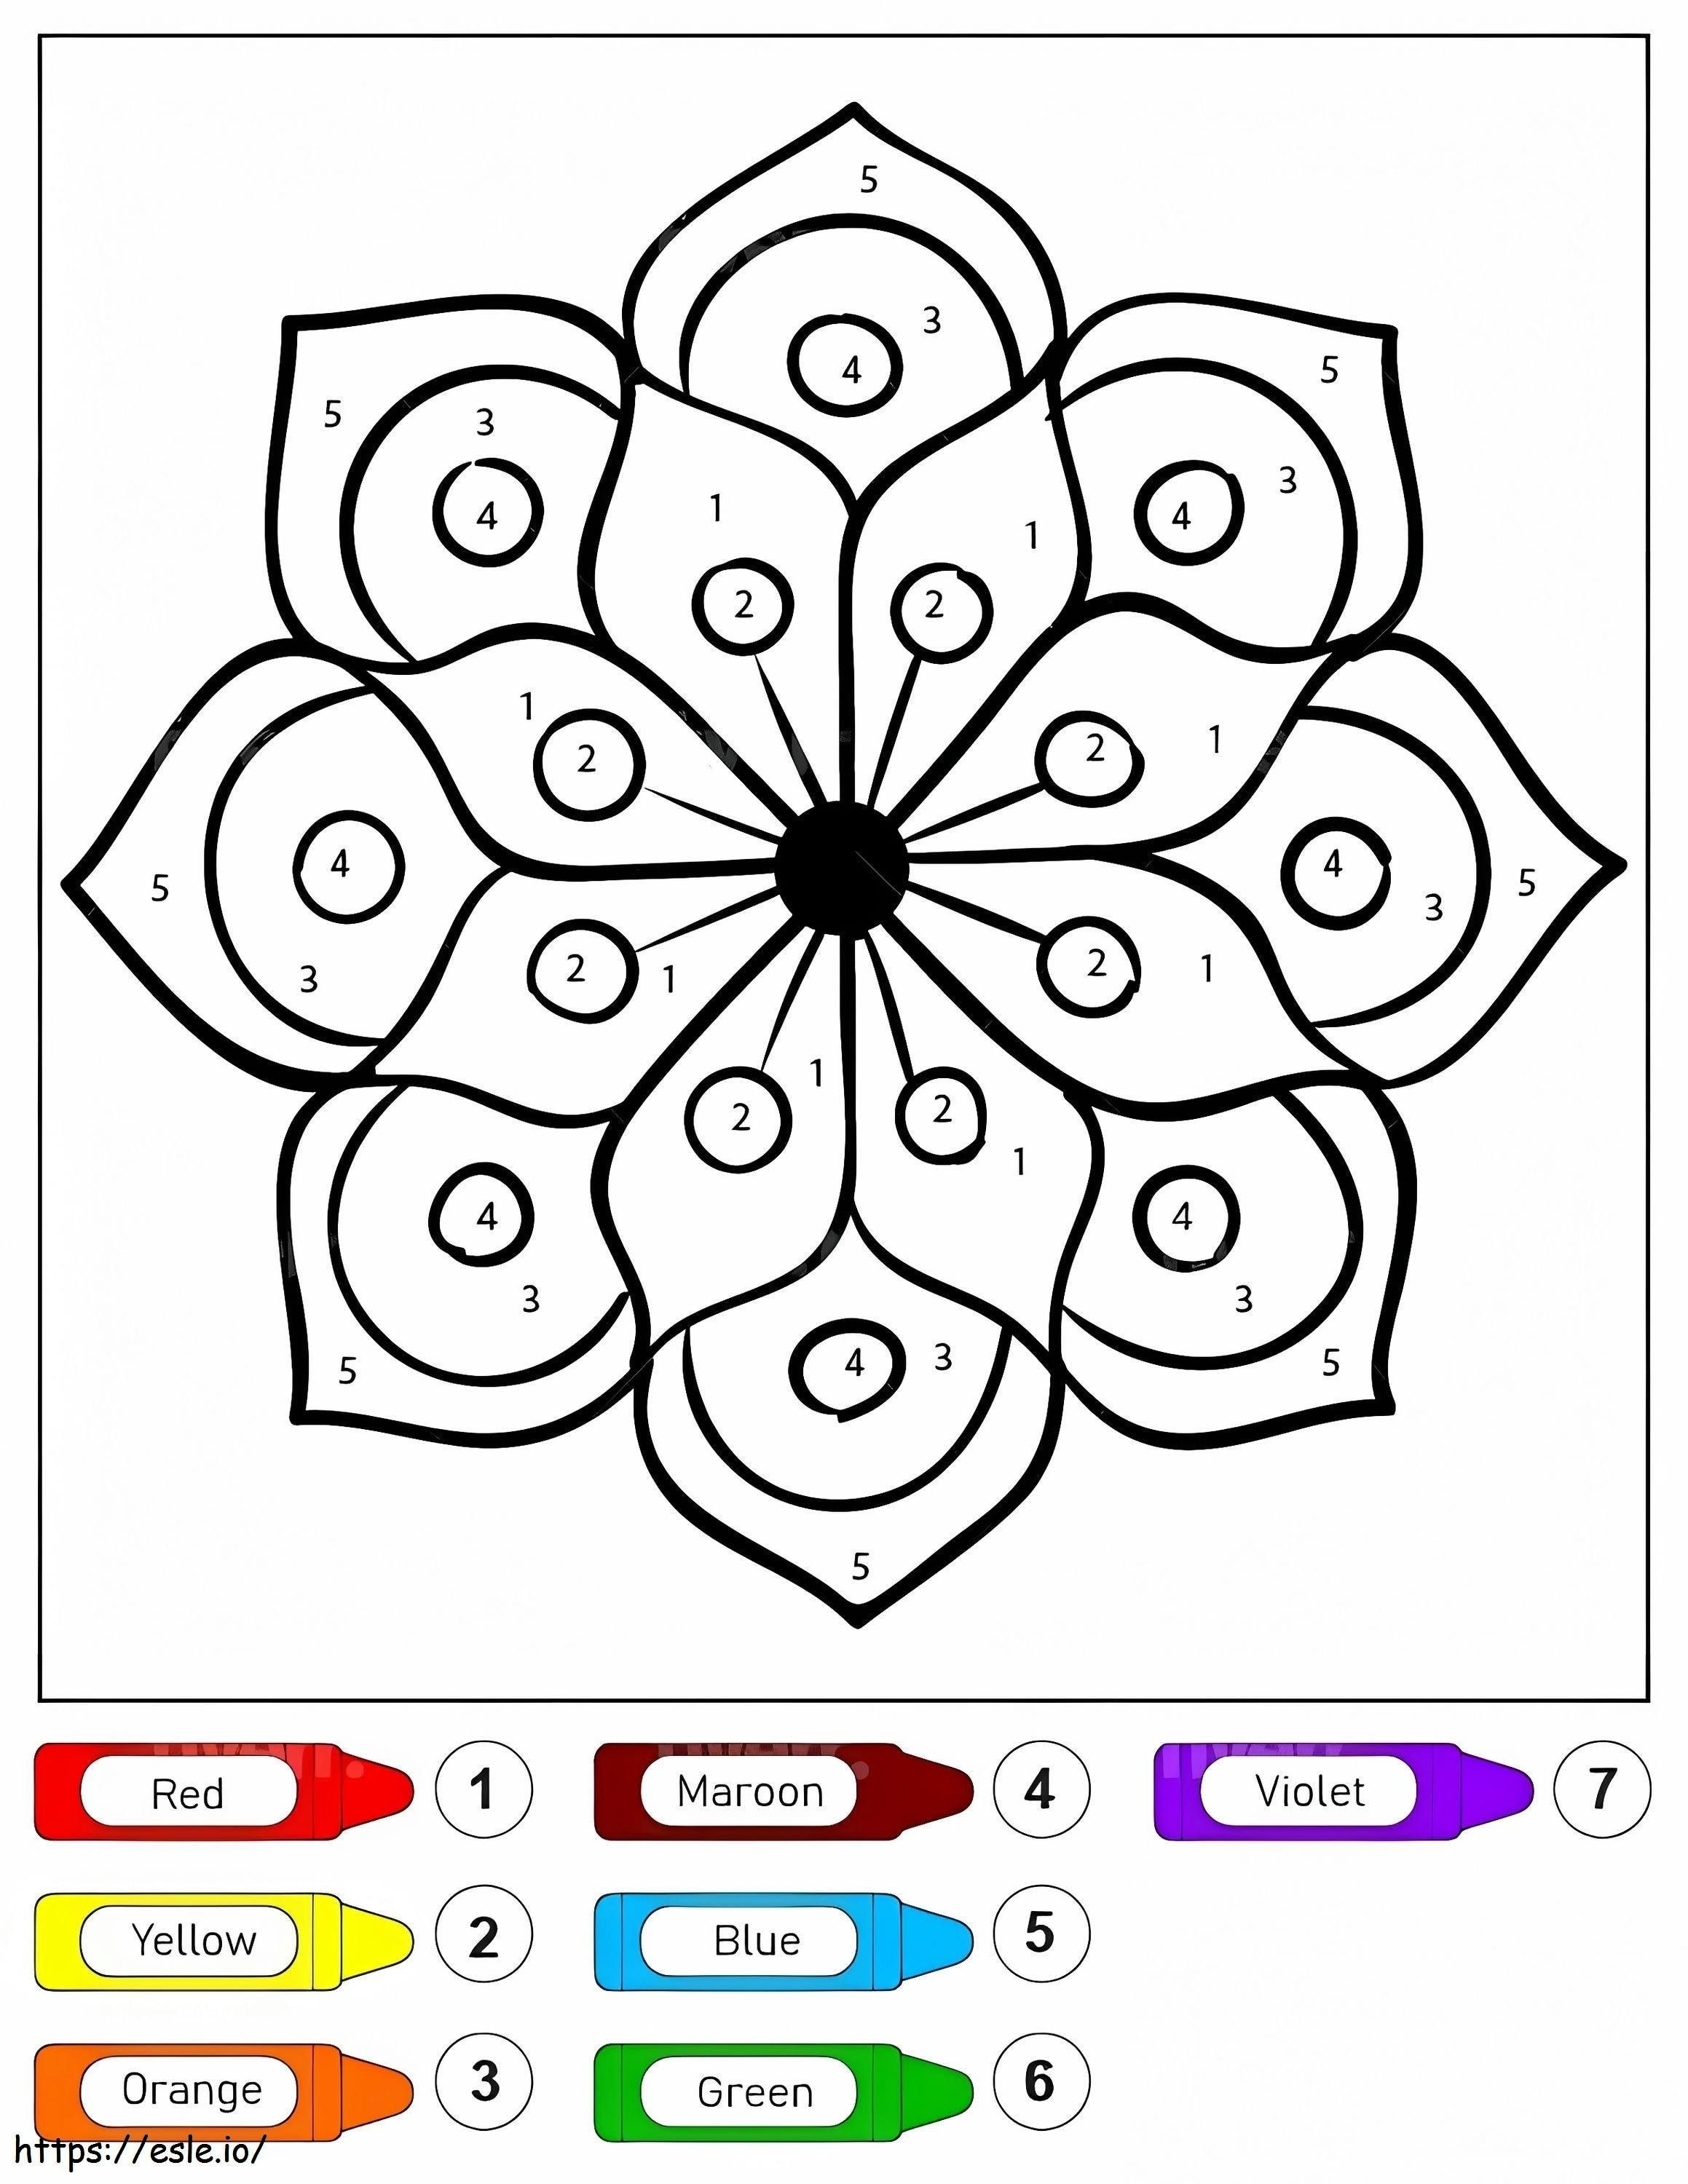 Mandala di disegno di fiori per bambini da colorare per numero da colorare